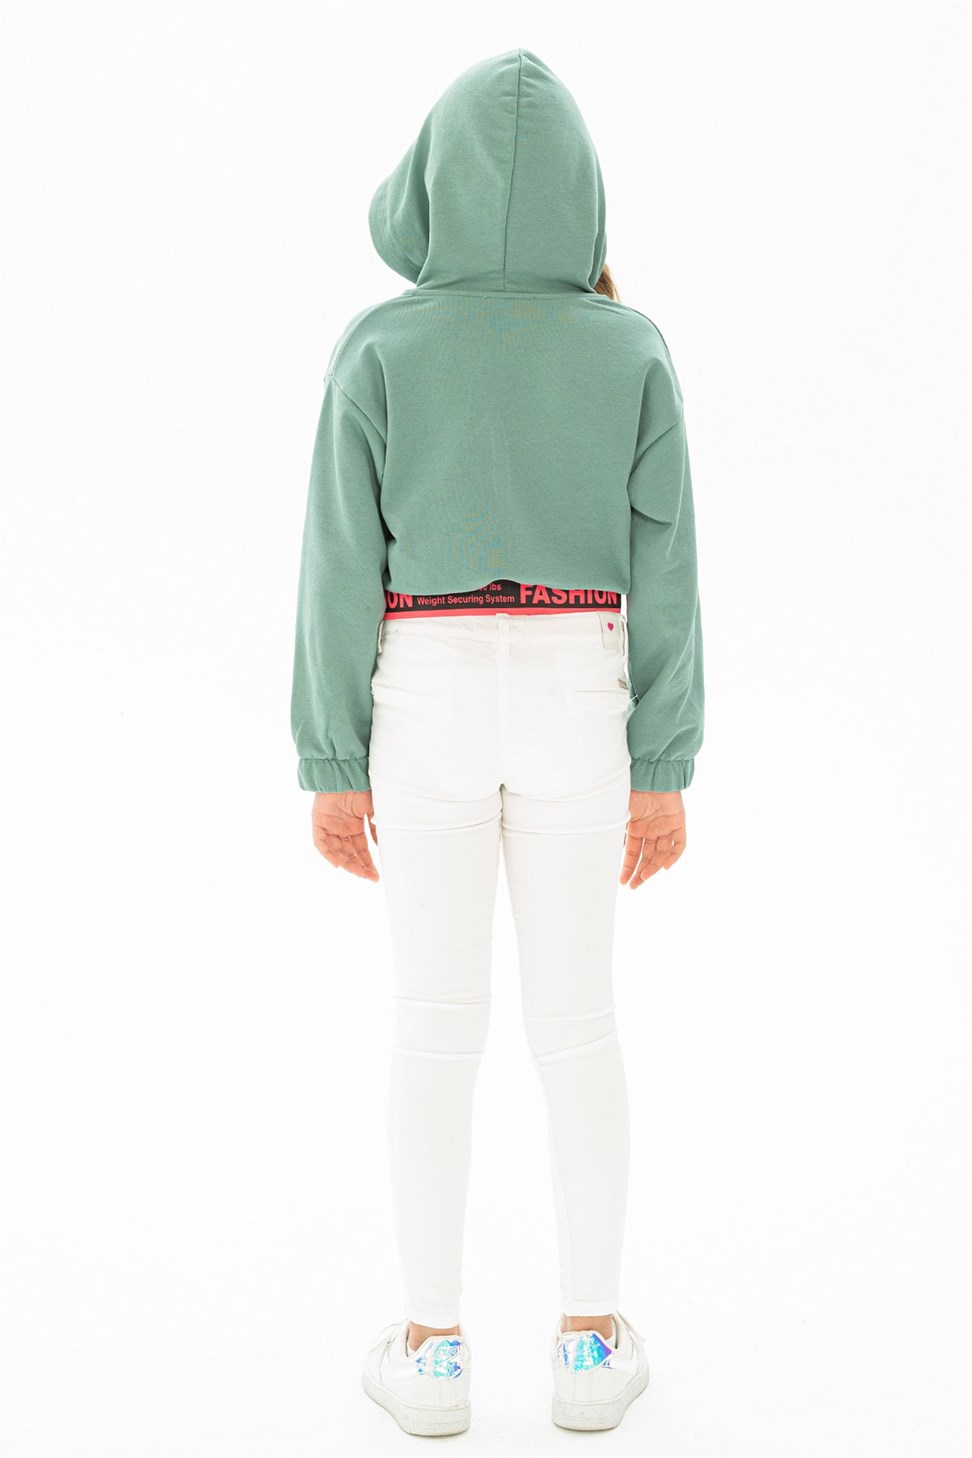 Acar-Kız Çocuk Çağla Yeşil Renkli Kapüşonlu Fashion Baskılı Crop Sweatshirt